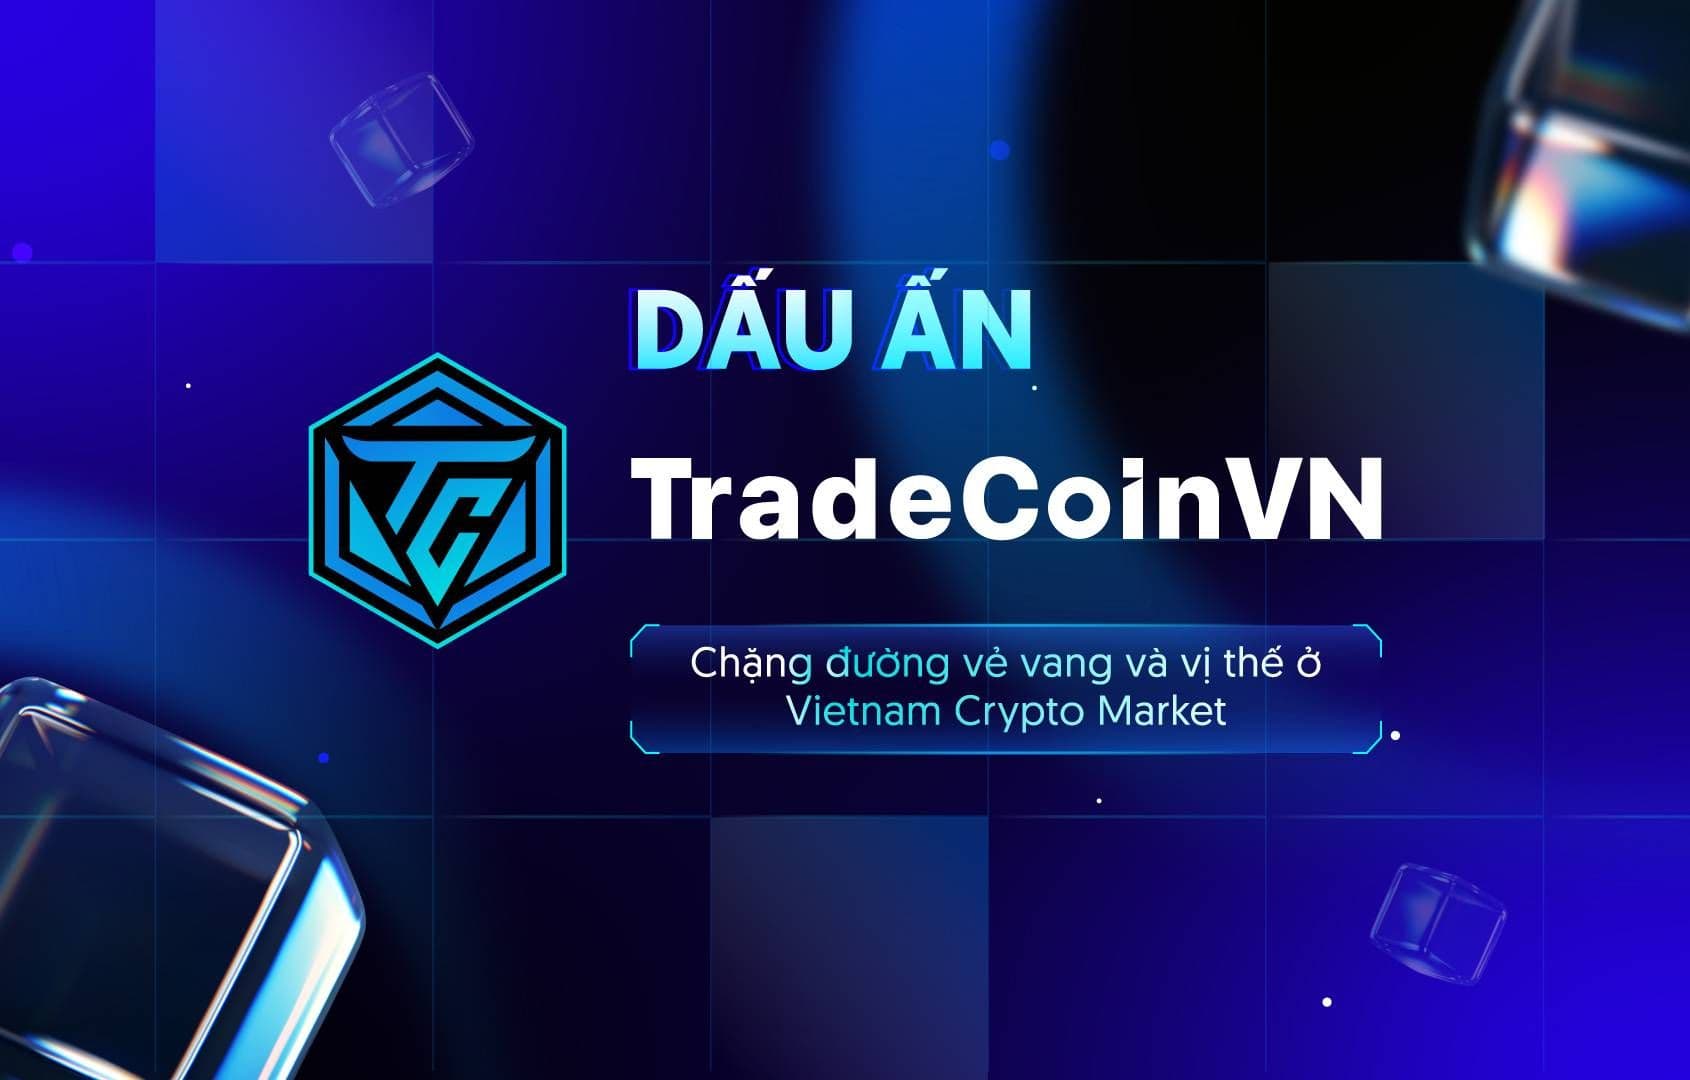 Dấu ấn TradeCoinVN, chặng đường vẻ vang và vị thế ở Vietnam Crypto Market 